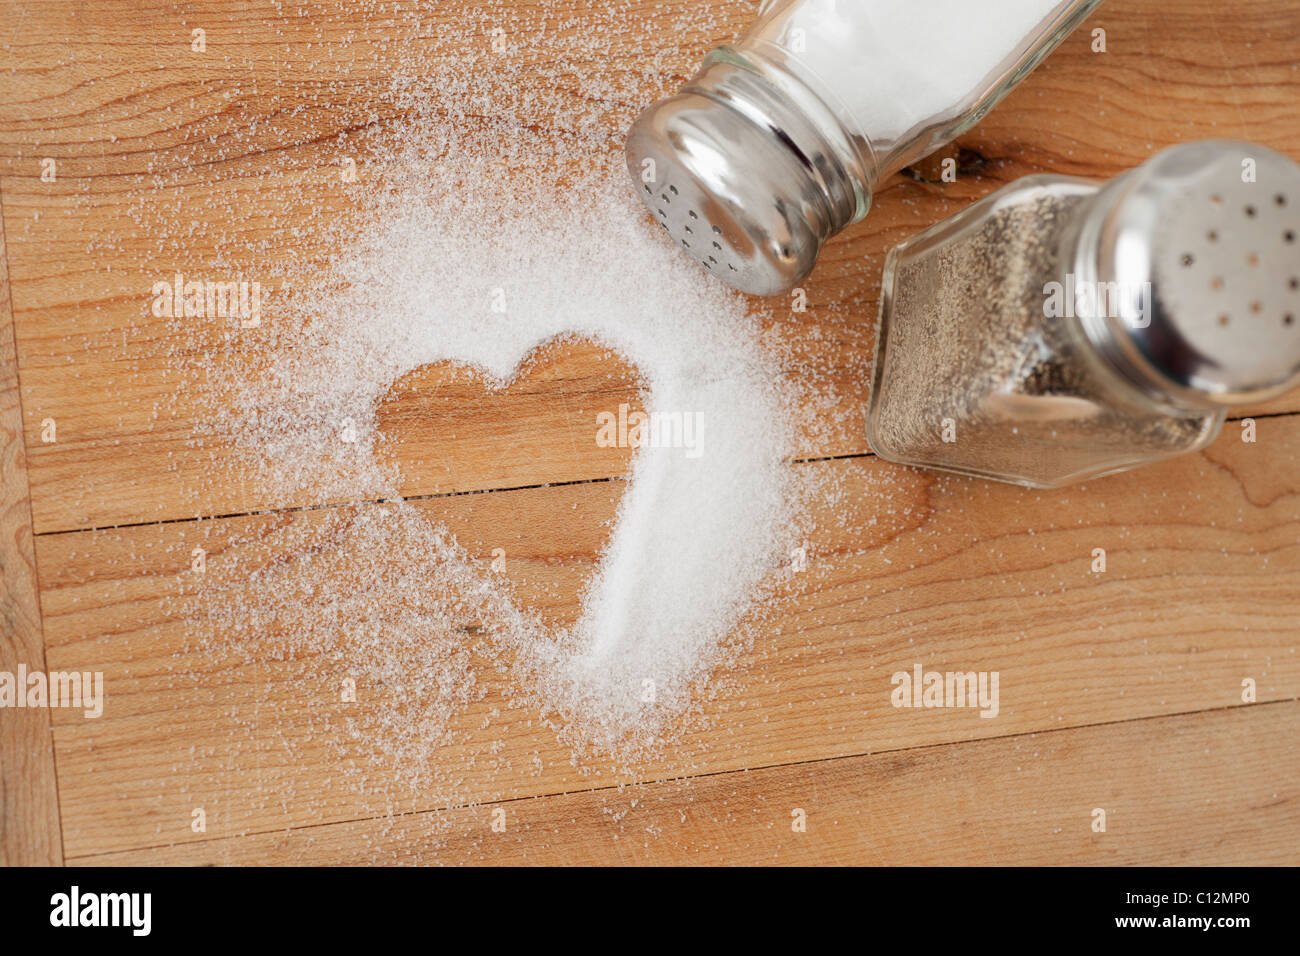 Heart shaped spilt salt on table Stock Photo